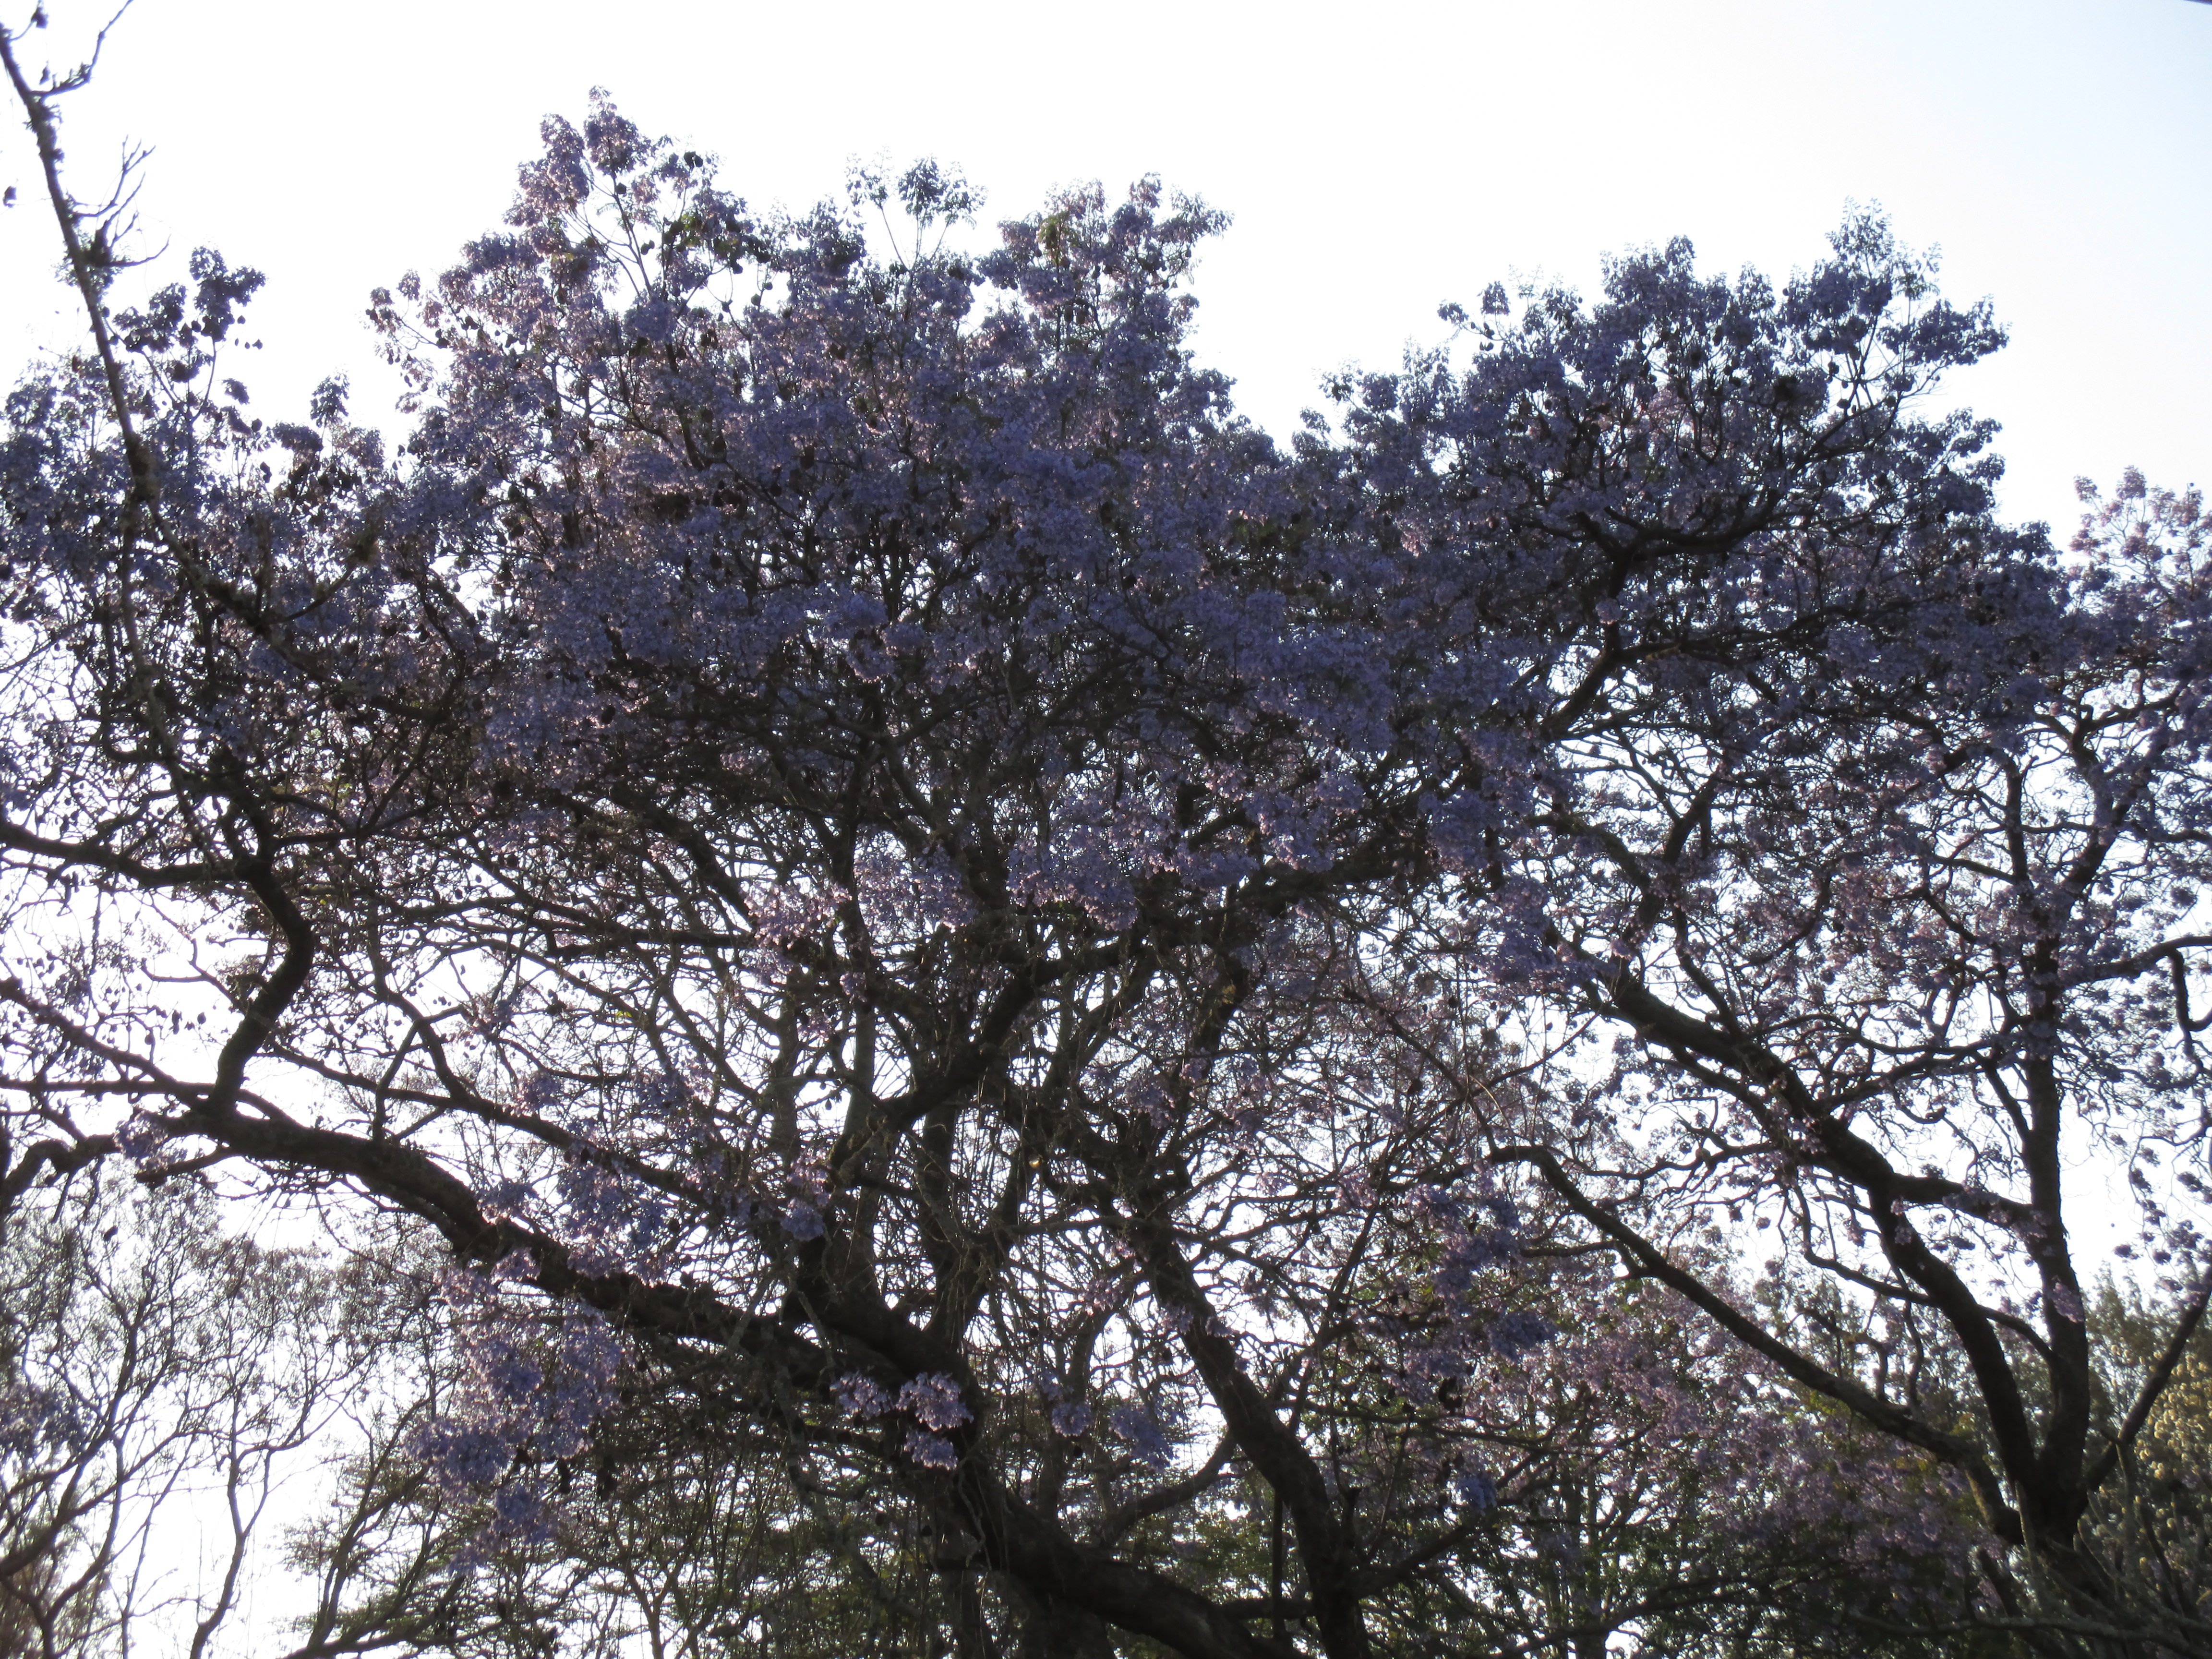 The Jacaranda trees were in bloom